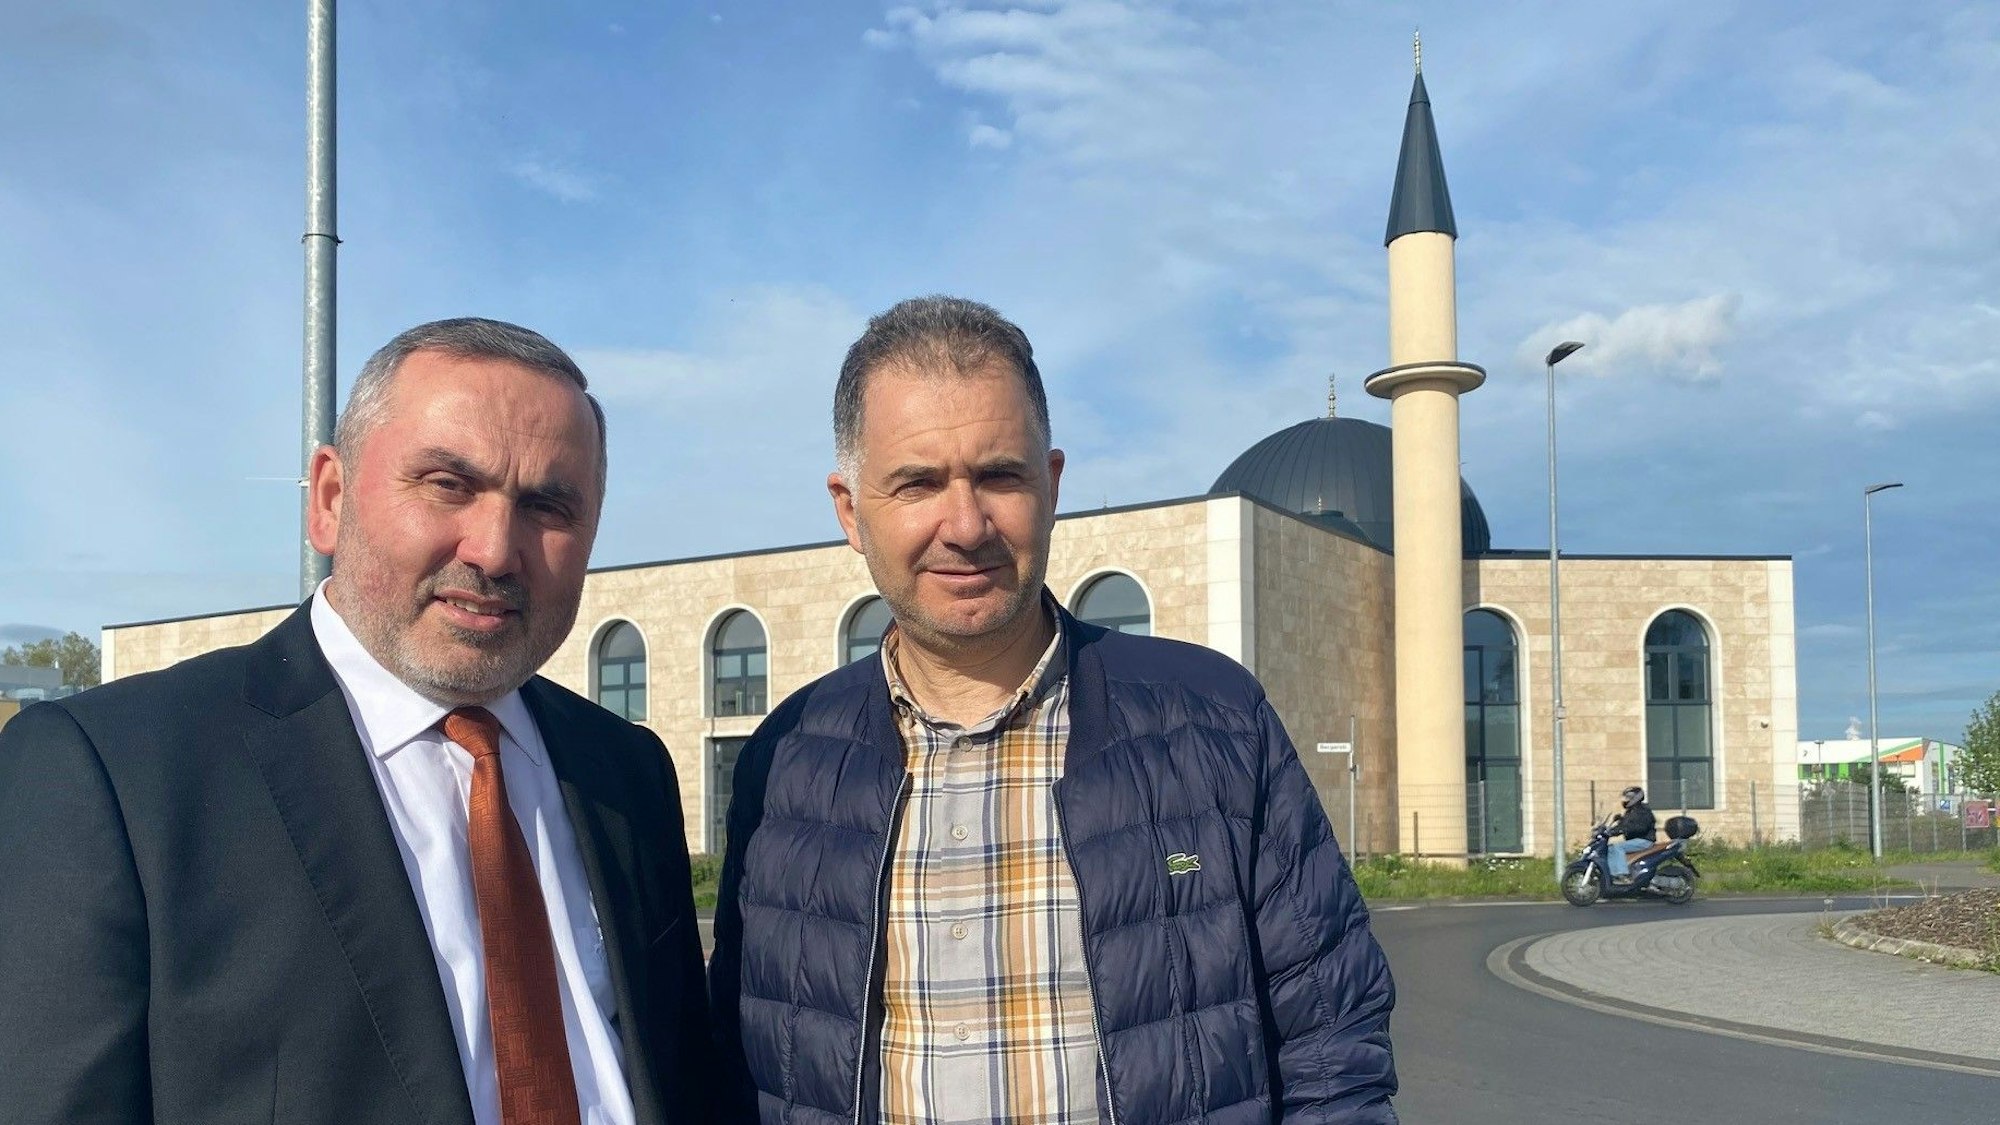 Zu sehen sind Mehmet Kara und Mahmut Yasar vom Islamischen Gemeindezentrums Brühl.